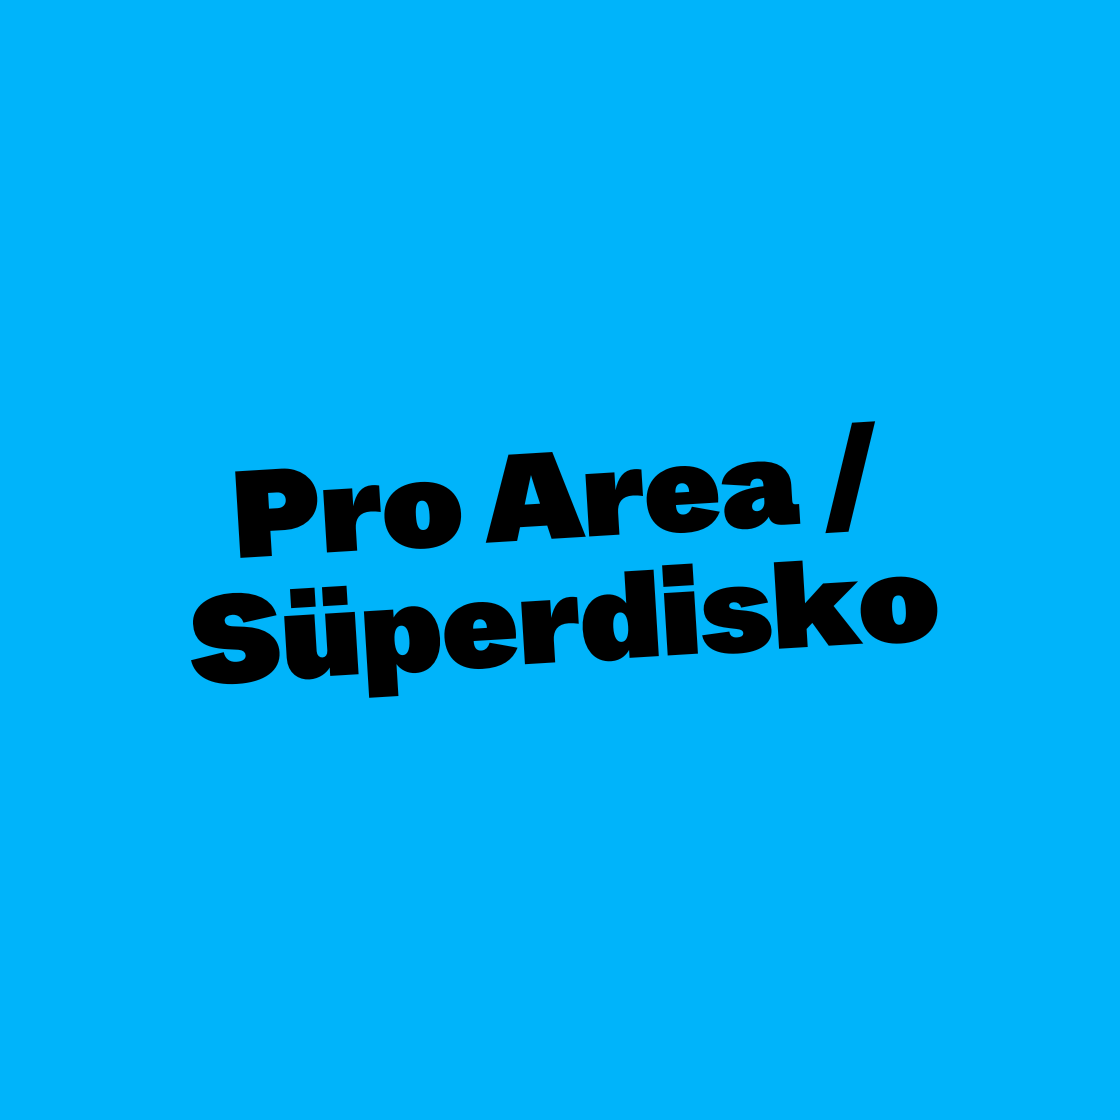 Pro Area / Süperdisko